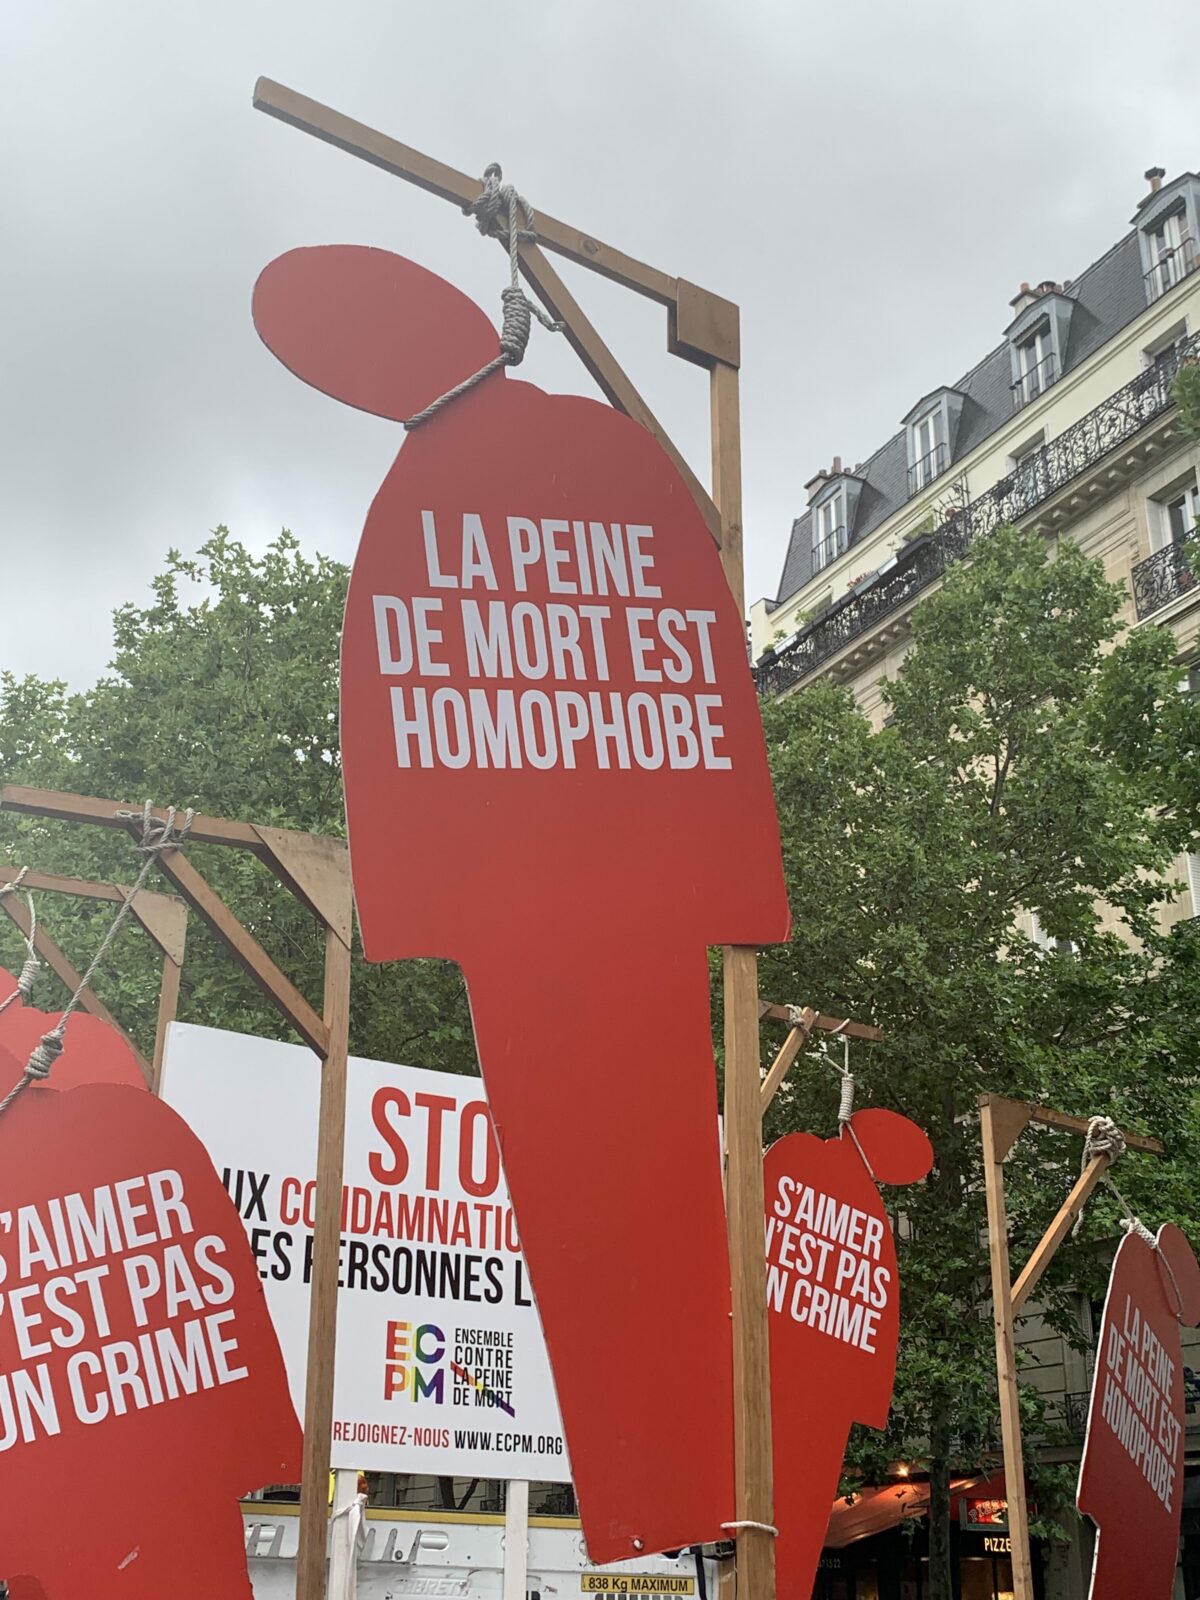 "La peine de mort est homophobe" - Tiphaine Dubuard 